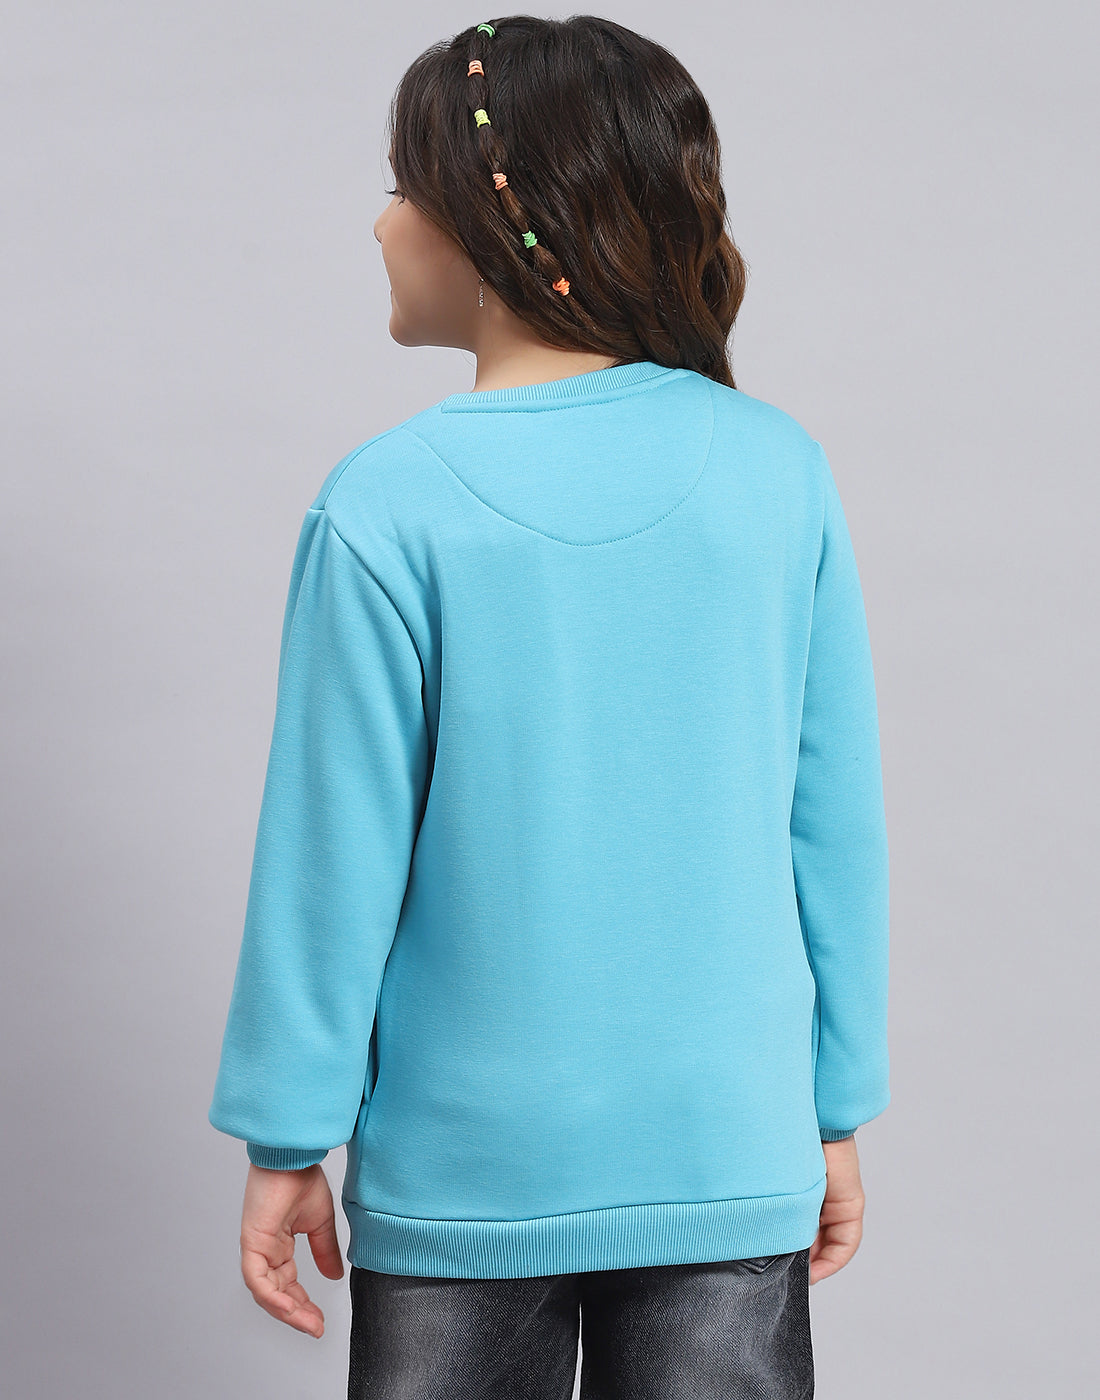 Girls Turquoise Blue Embellished Round Neck Full Sleeve Sweatshirt